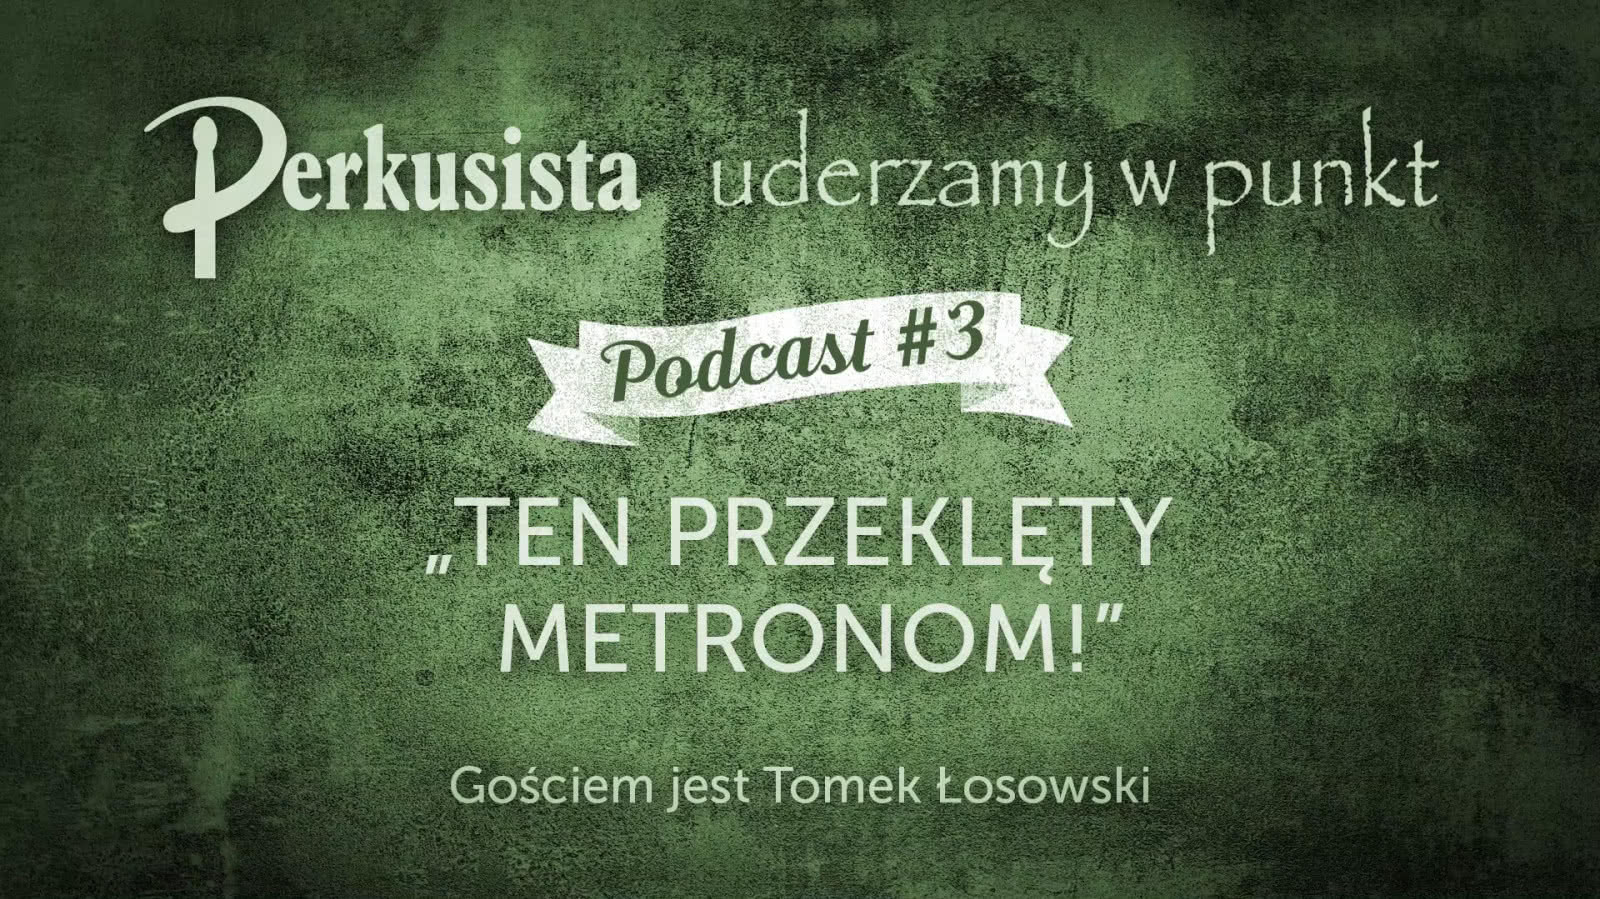 Drum Podcast #3 - Ten przeklęty metronom!/Tomek Łosowski 